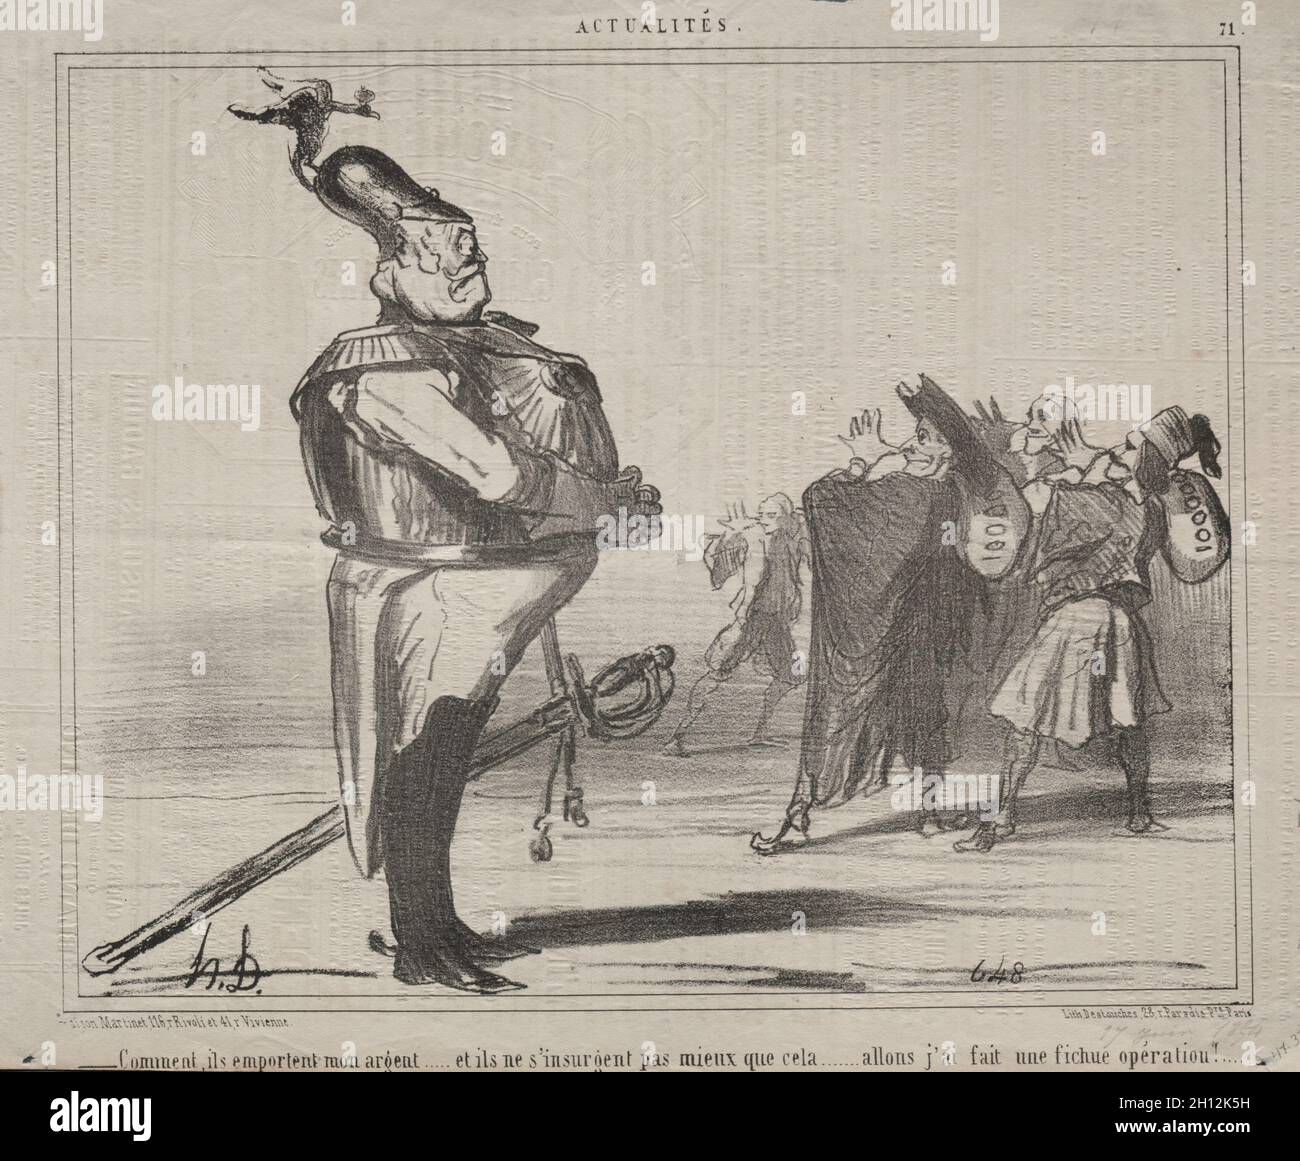 Pubblicato in le Charivari (17 giugno 1854): Attualità (n. 71): Perché stanno togliendo i miei soldi..., 1854. Honoré Daumier (francese, 1808-1879). Litografia; foglio: 24.6 x 30.1 cm (9 11/16 x 11 7/8 pollici); immagine: 21.3 x 26.6 cm (8 3/8 x 10 1/2 pollici). Foto Stock